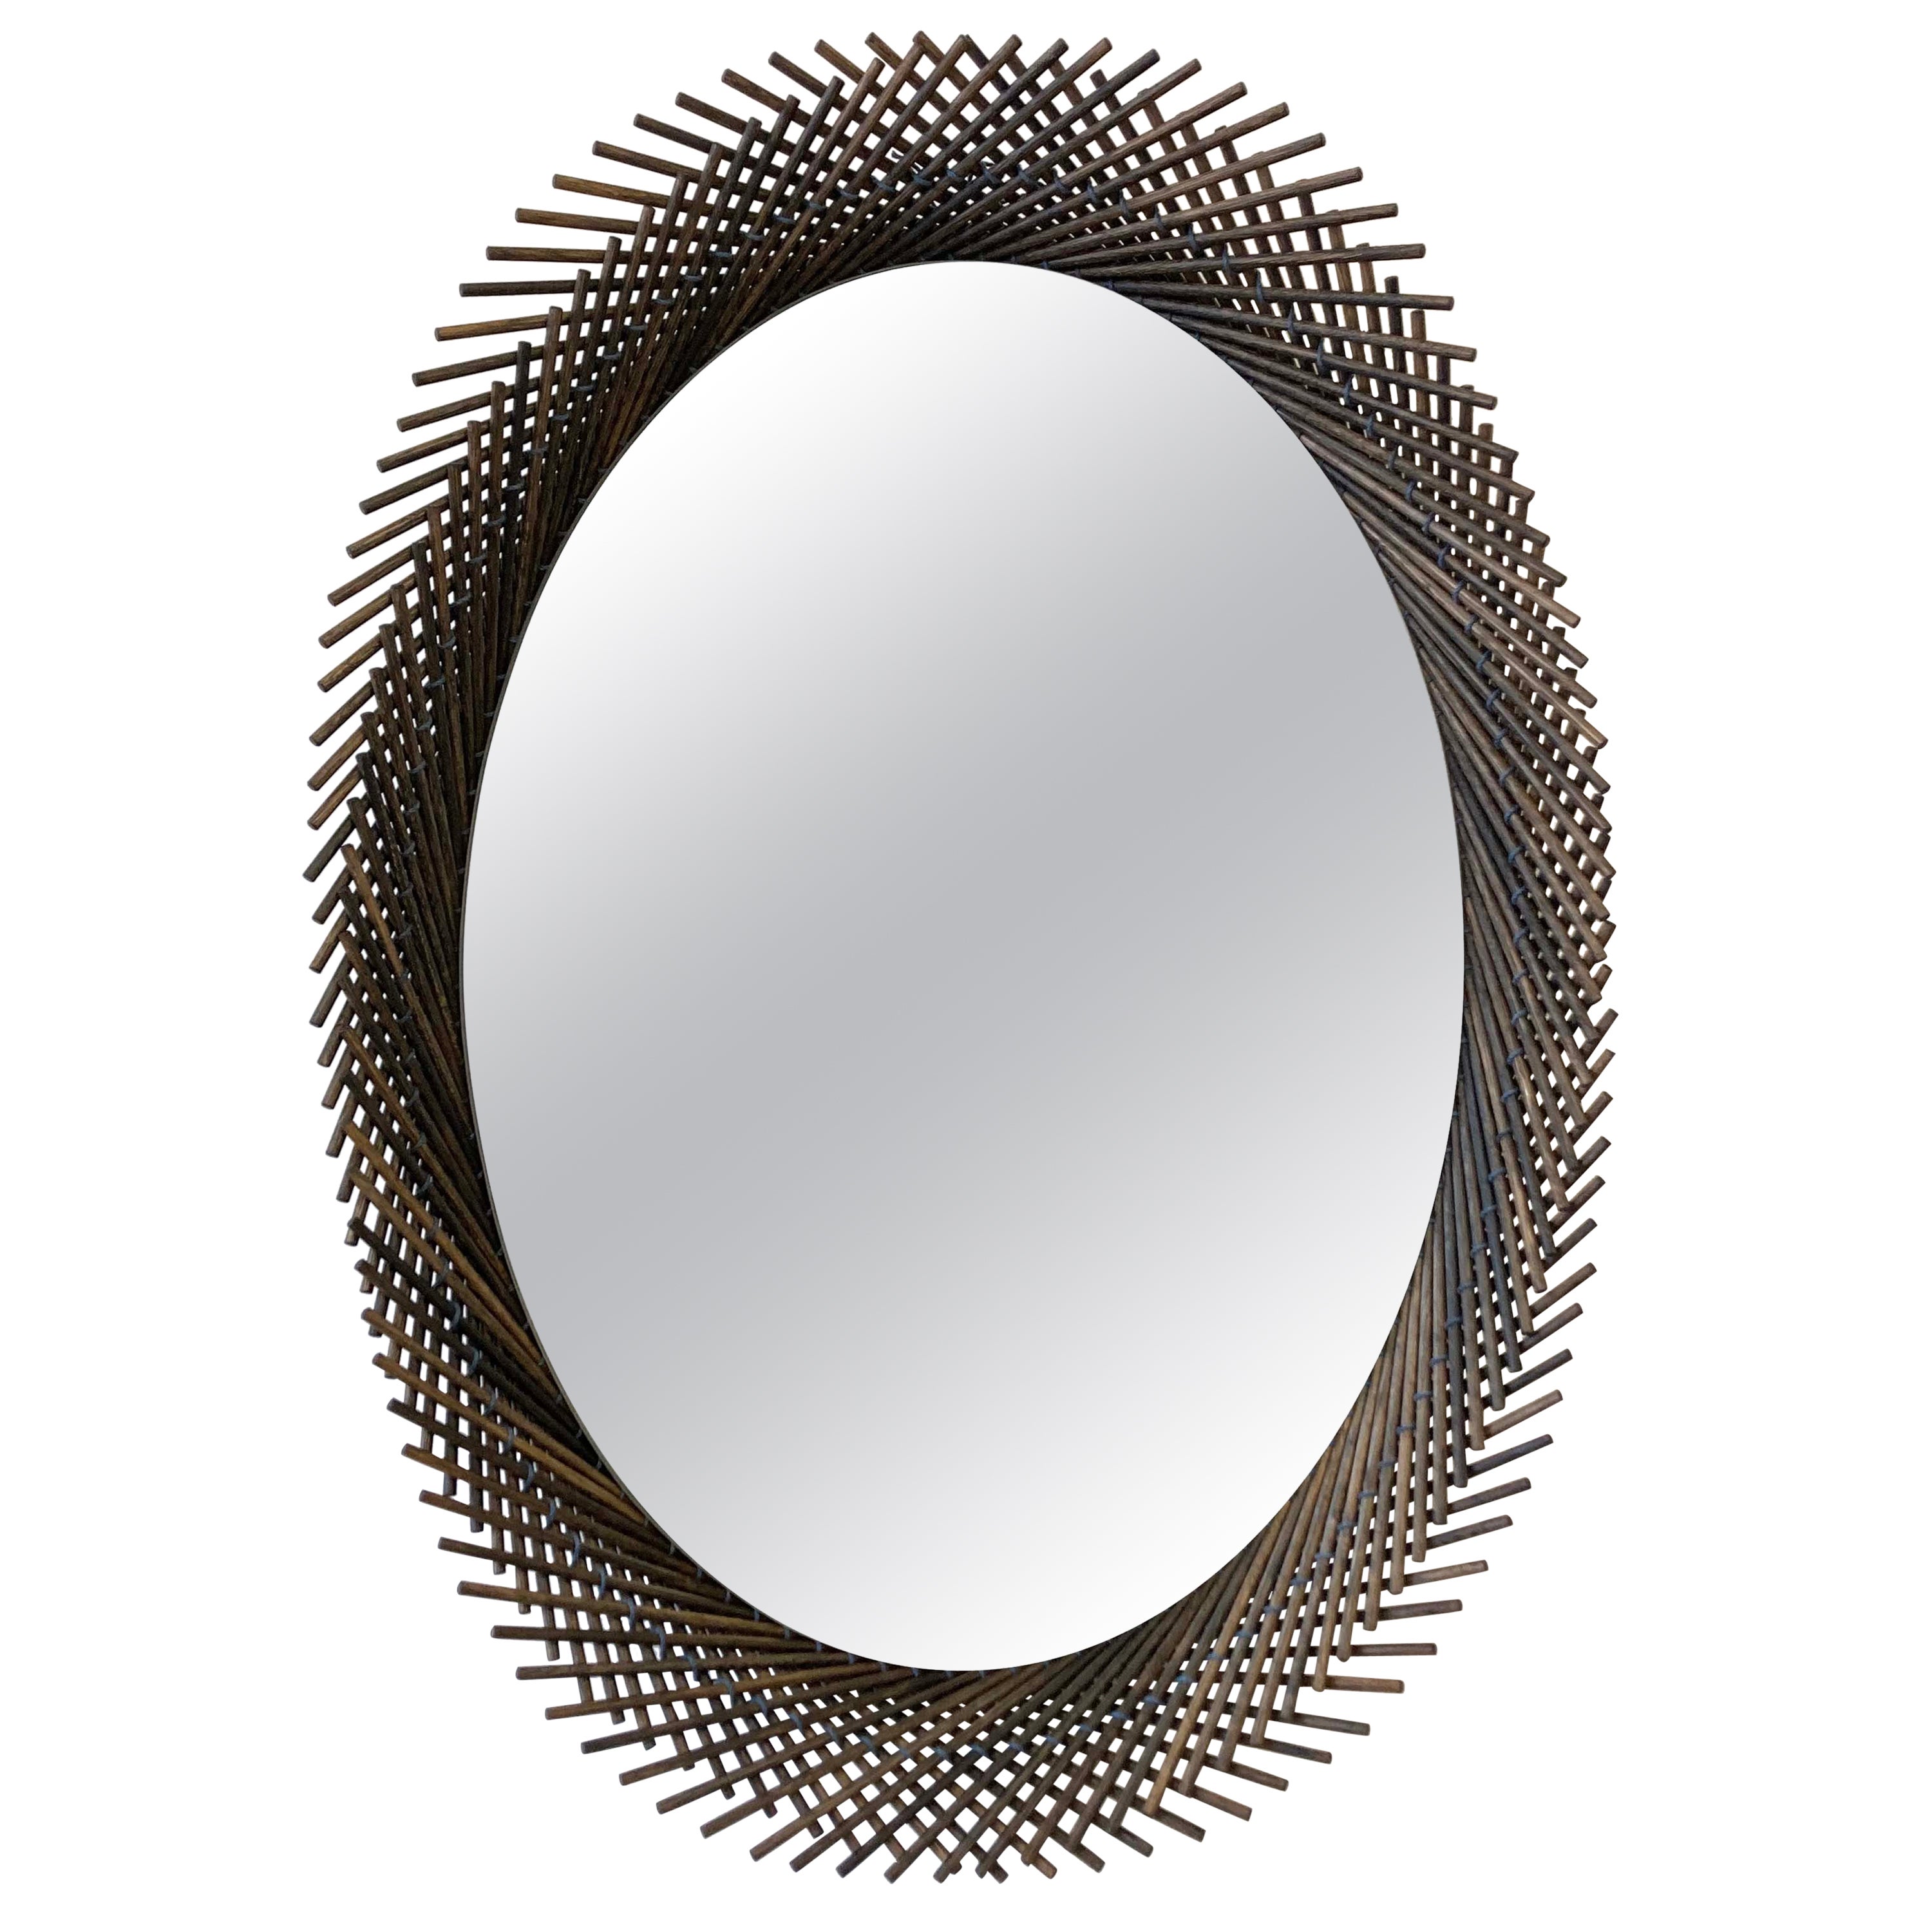 Mooda Mirror Oval 28 / Oxidized Oak Wood, Clear Mirror by INDO-